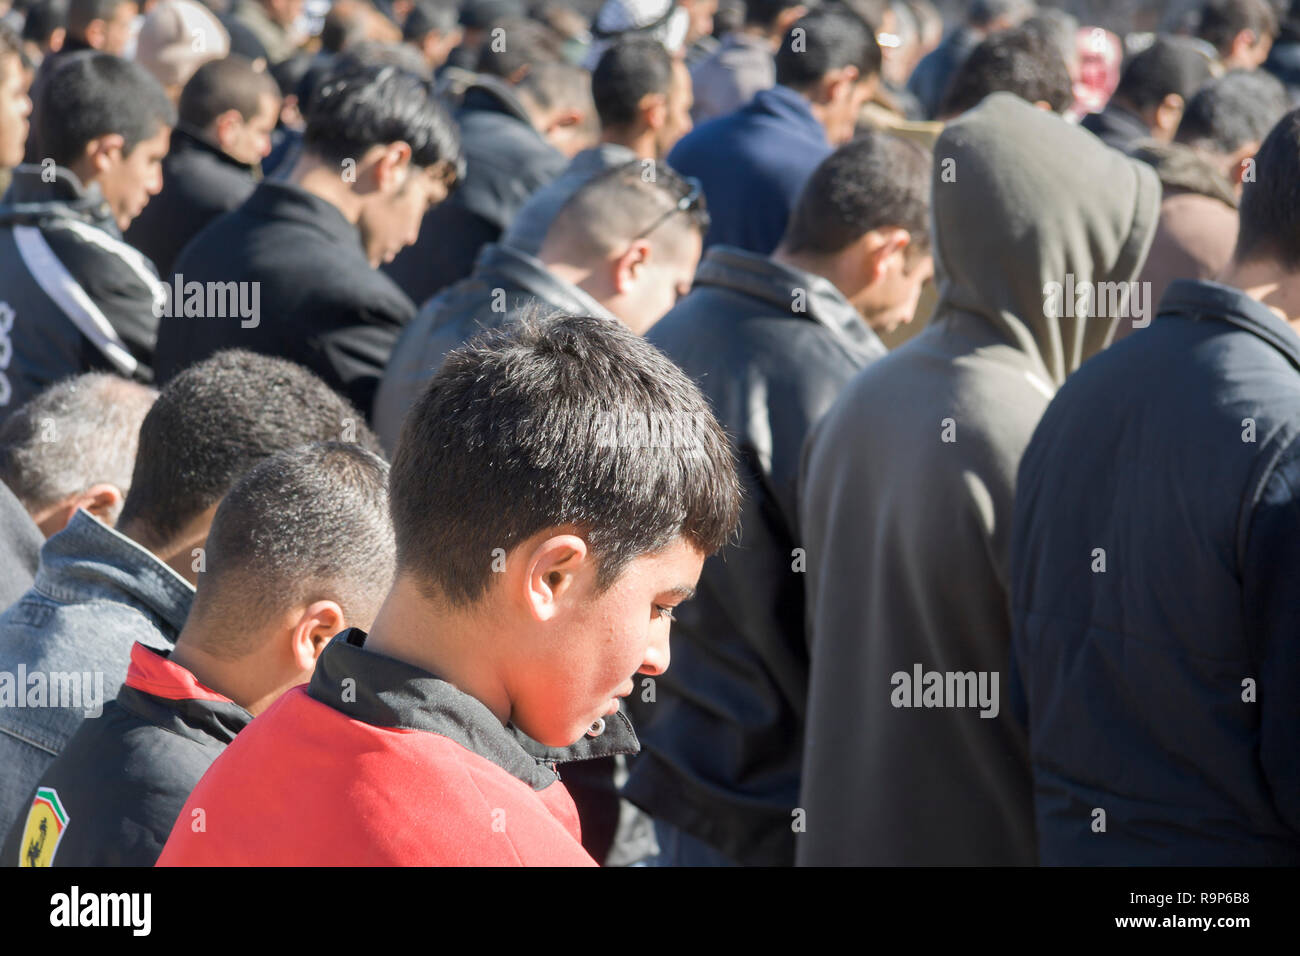 Muslim men praying, Palestine Stock Photo